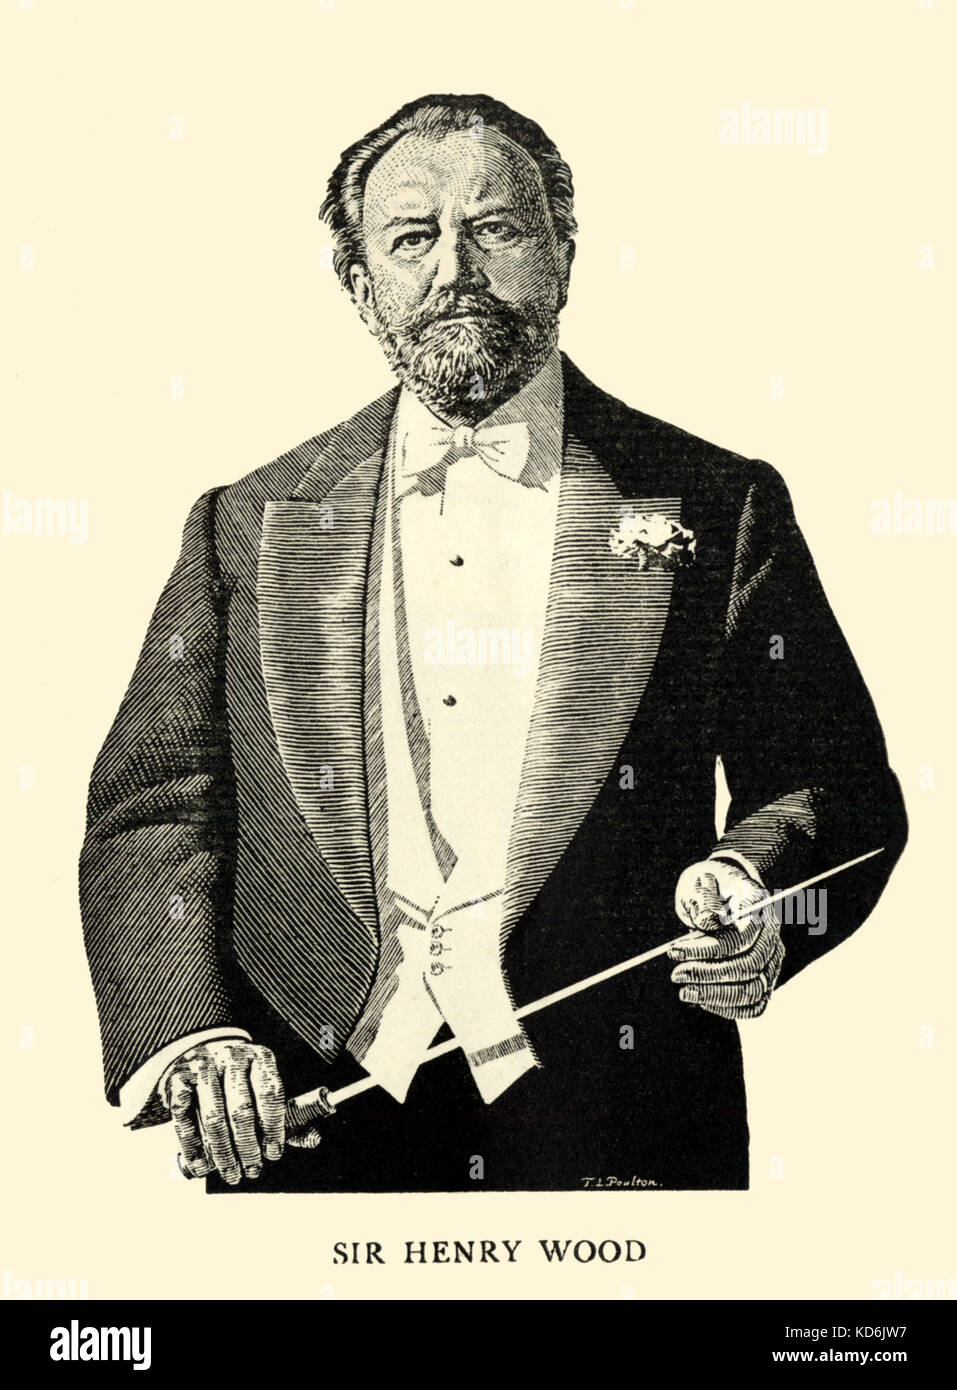 Sir Henry Wood, Portrait mit Taktstock. Gravur innerhalb des Programms für die 1934 BBC Proms, von T.l. Poulton. Promenade Konzerte, Queen's Hall, London. Englische Dirigent, 1869-1944. Stockfoto